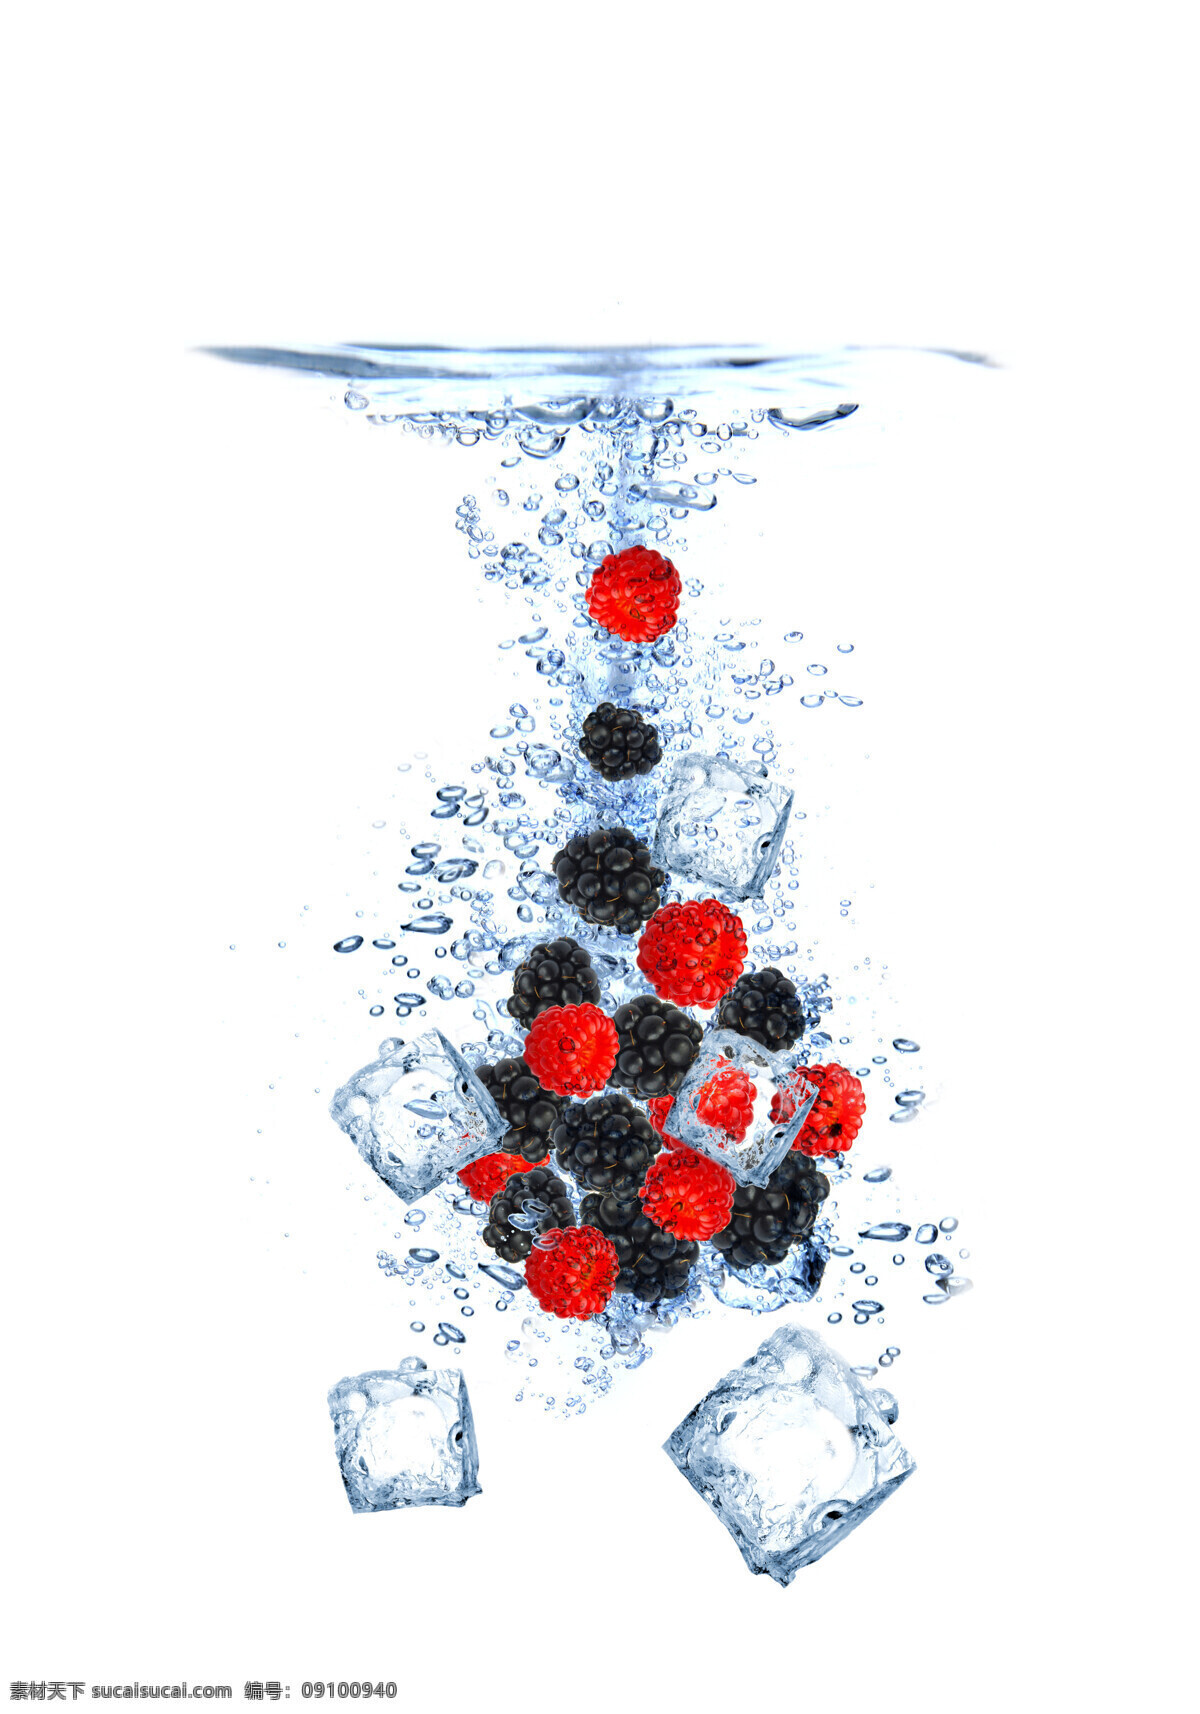 冰块 生物世界 水滴 水果 水花 水珠 新鲜水果 水中 树莓 设计素材 模板下载 水中树莓 冰 结冰 psd源文件